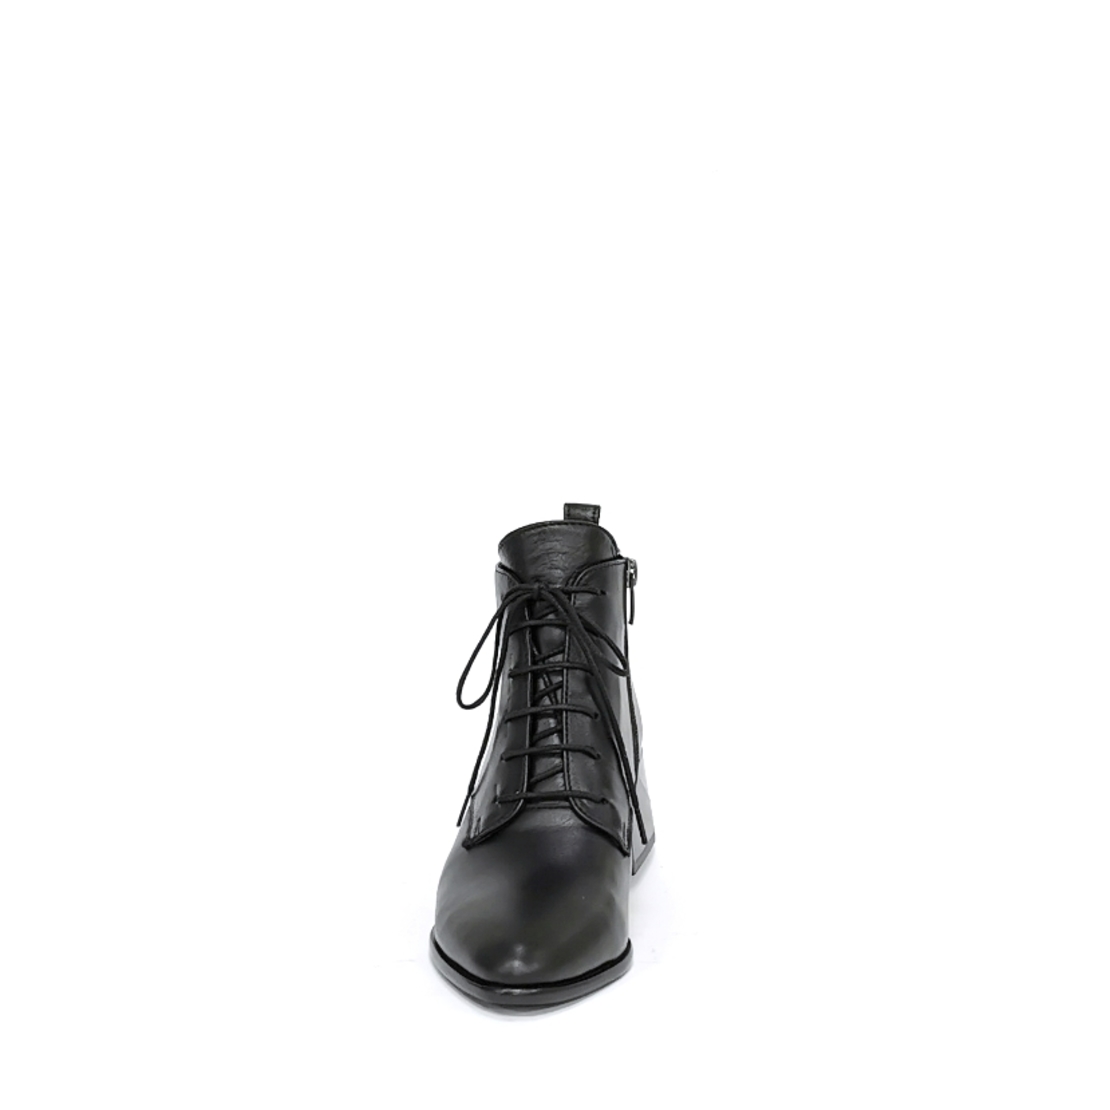 Женские элегантные ботинки из натуральной кожи черного цвета/7340